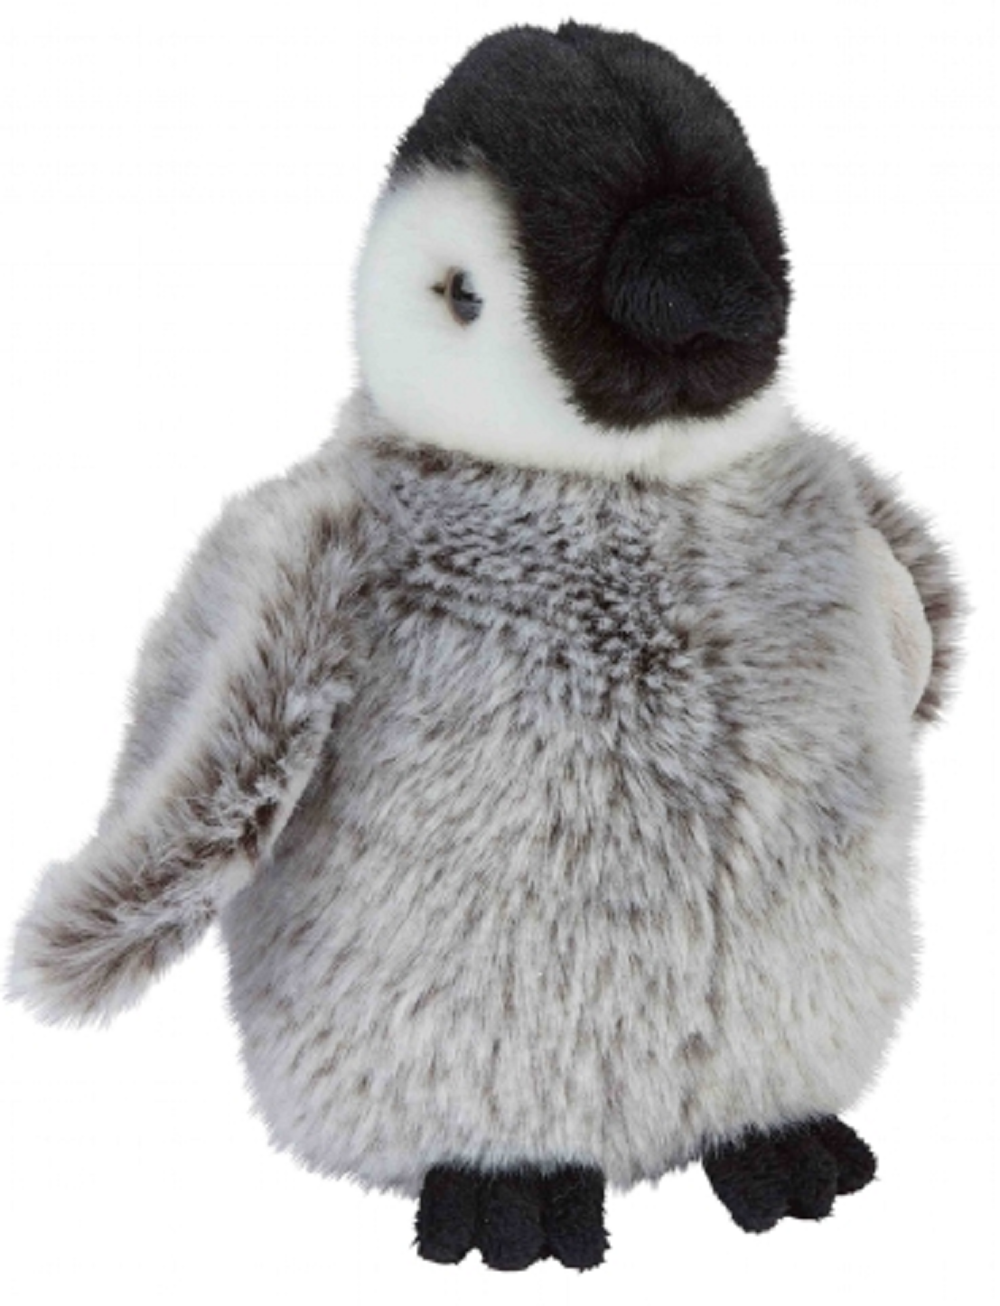 Ravensden Plush Penguin 18cm